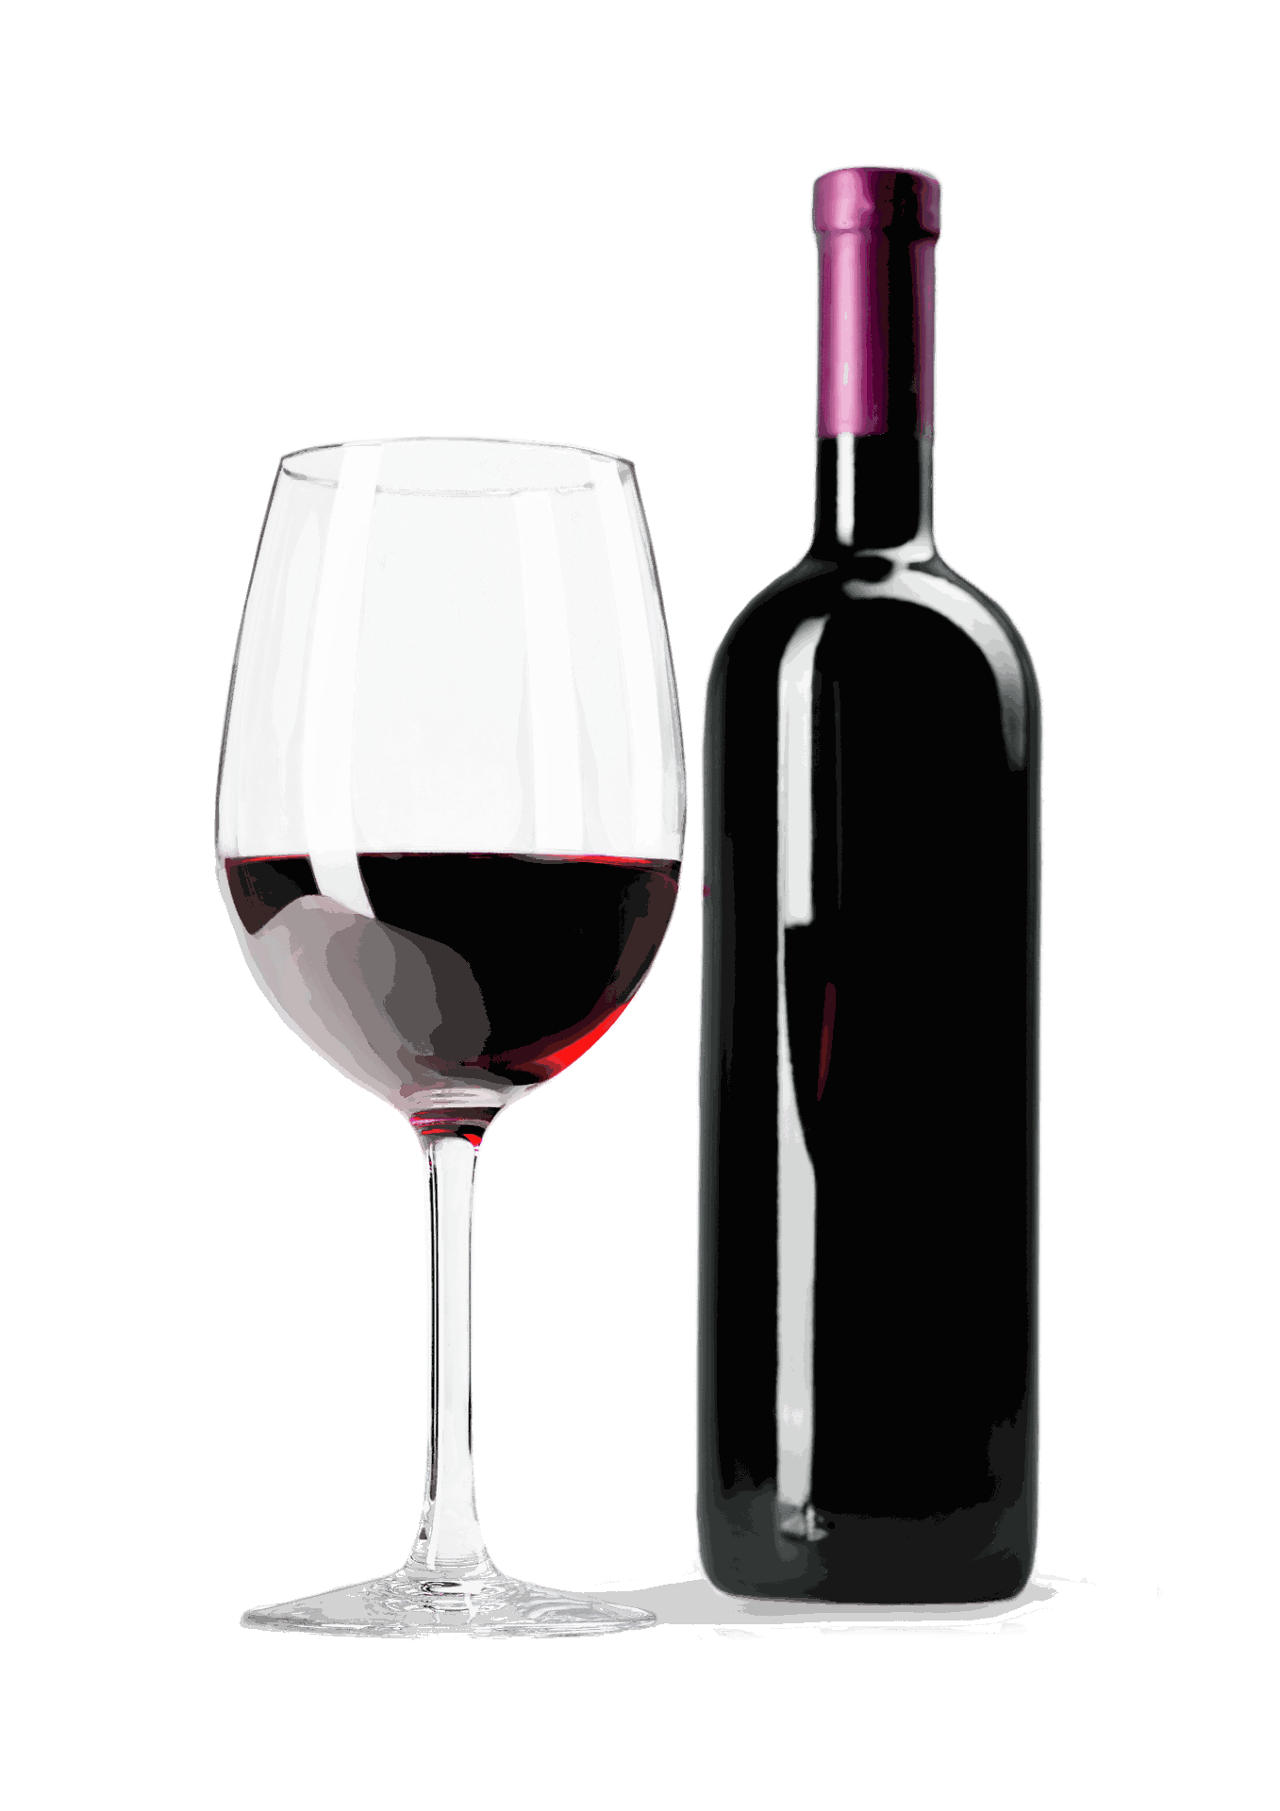 Vinafgifter, vin og glas, PIM, product information management